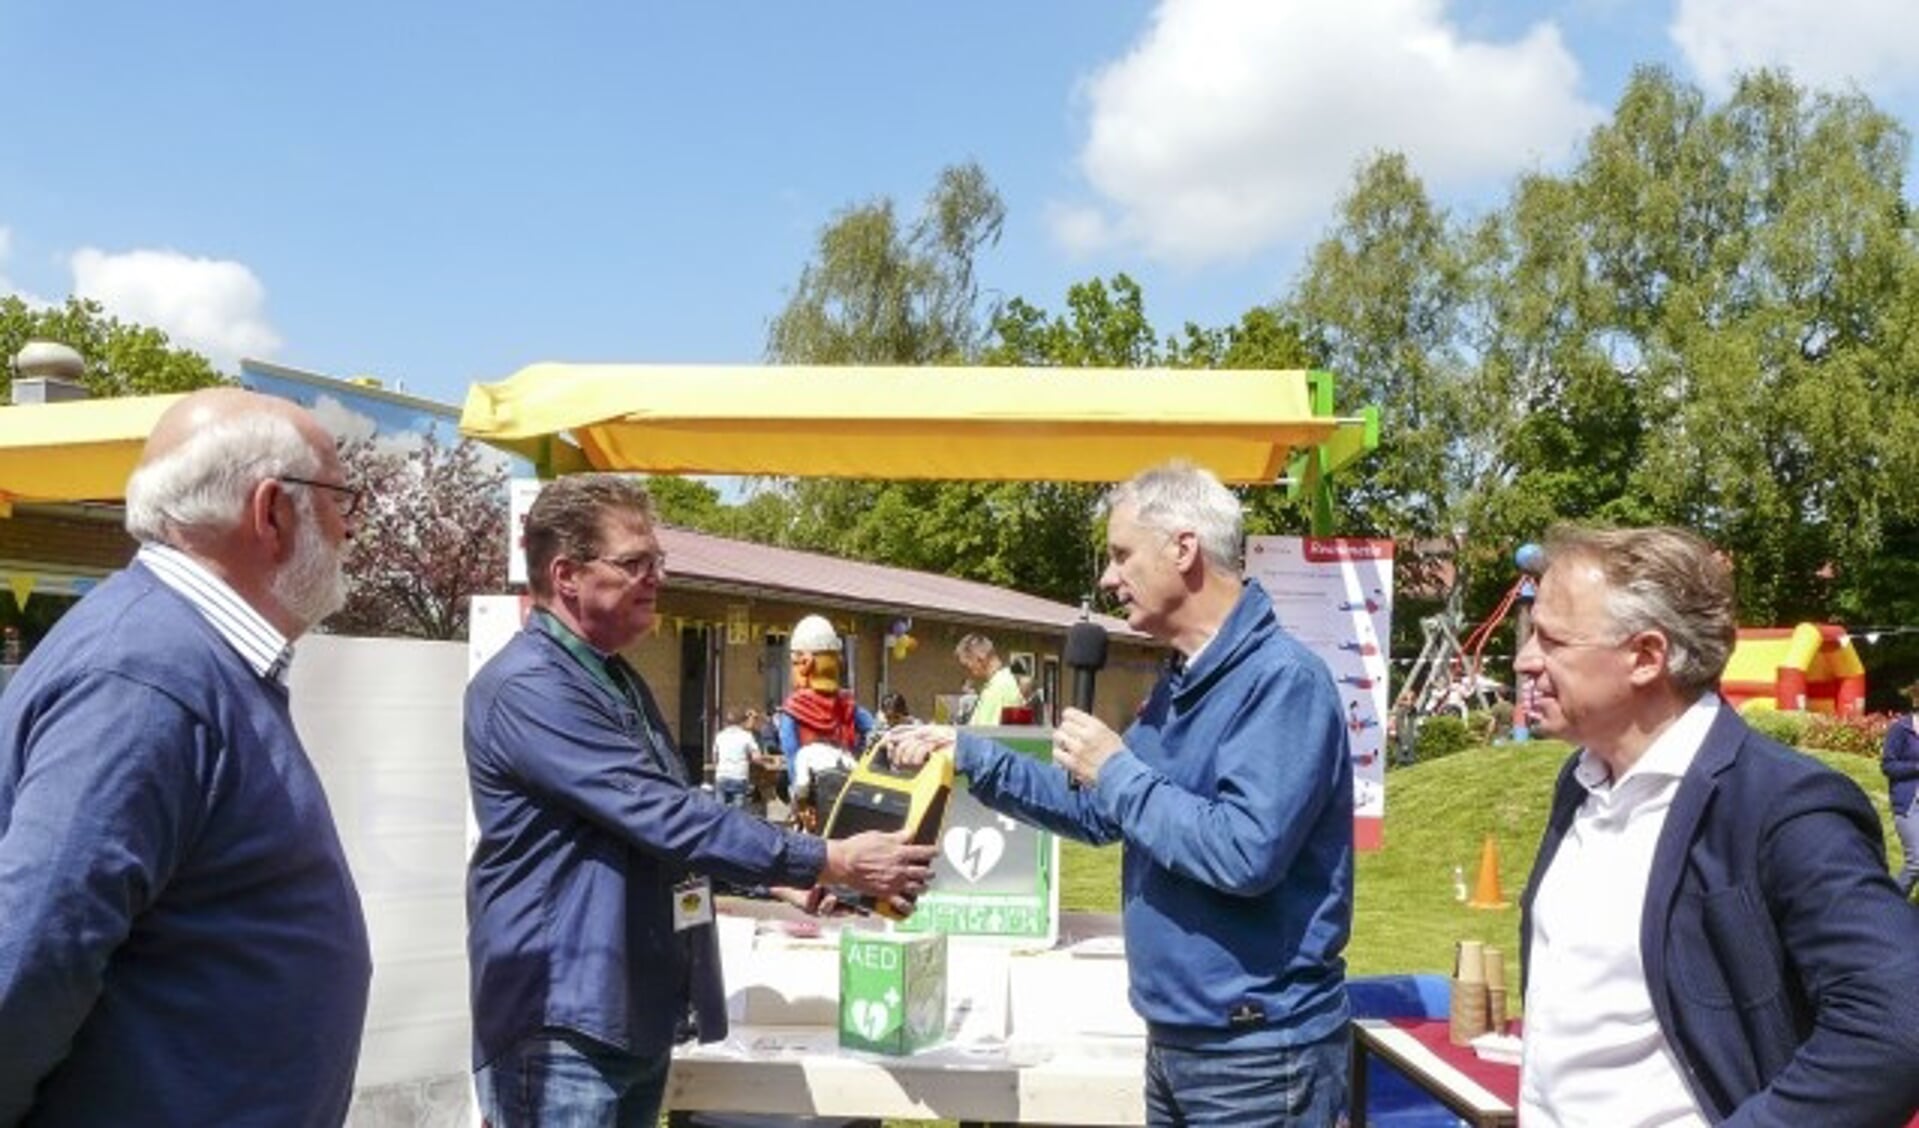 Peter Paul Tonen (Lionsclub), overhandigt de AED aan Geert Engelen (speeltuin Tuindorp). Naast hem staat Frans Seesing (Stichting Jan van Berkum) en  Bas Arents (Lionsclub). (Foto: Bob Nagel - PR-LCW)